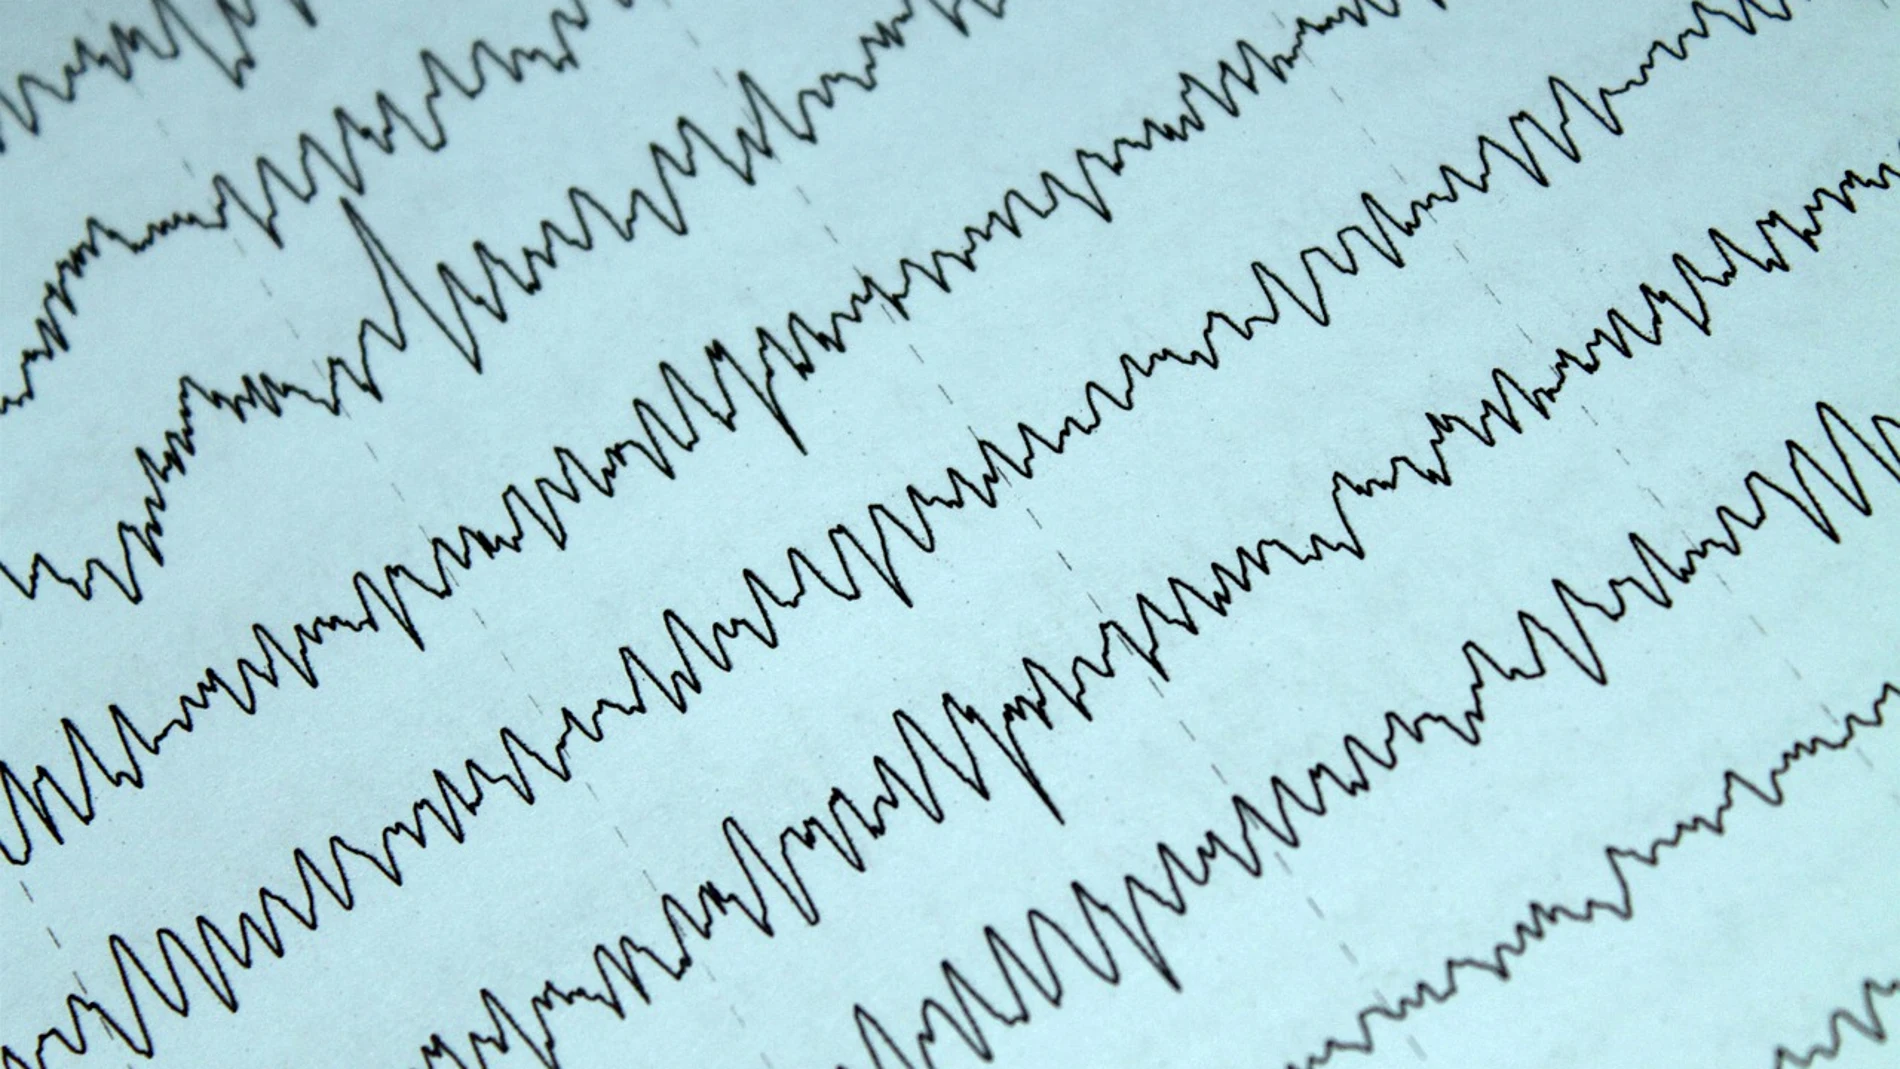 En un electroencefalograma, es posible ver las ondas de actividad en diferentes partes del cerebro, detectando el ritmo epiléptico.